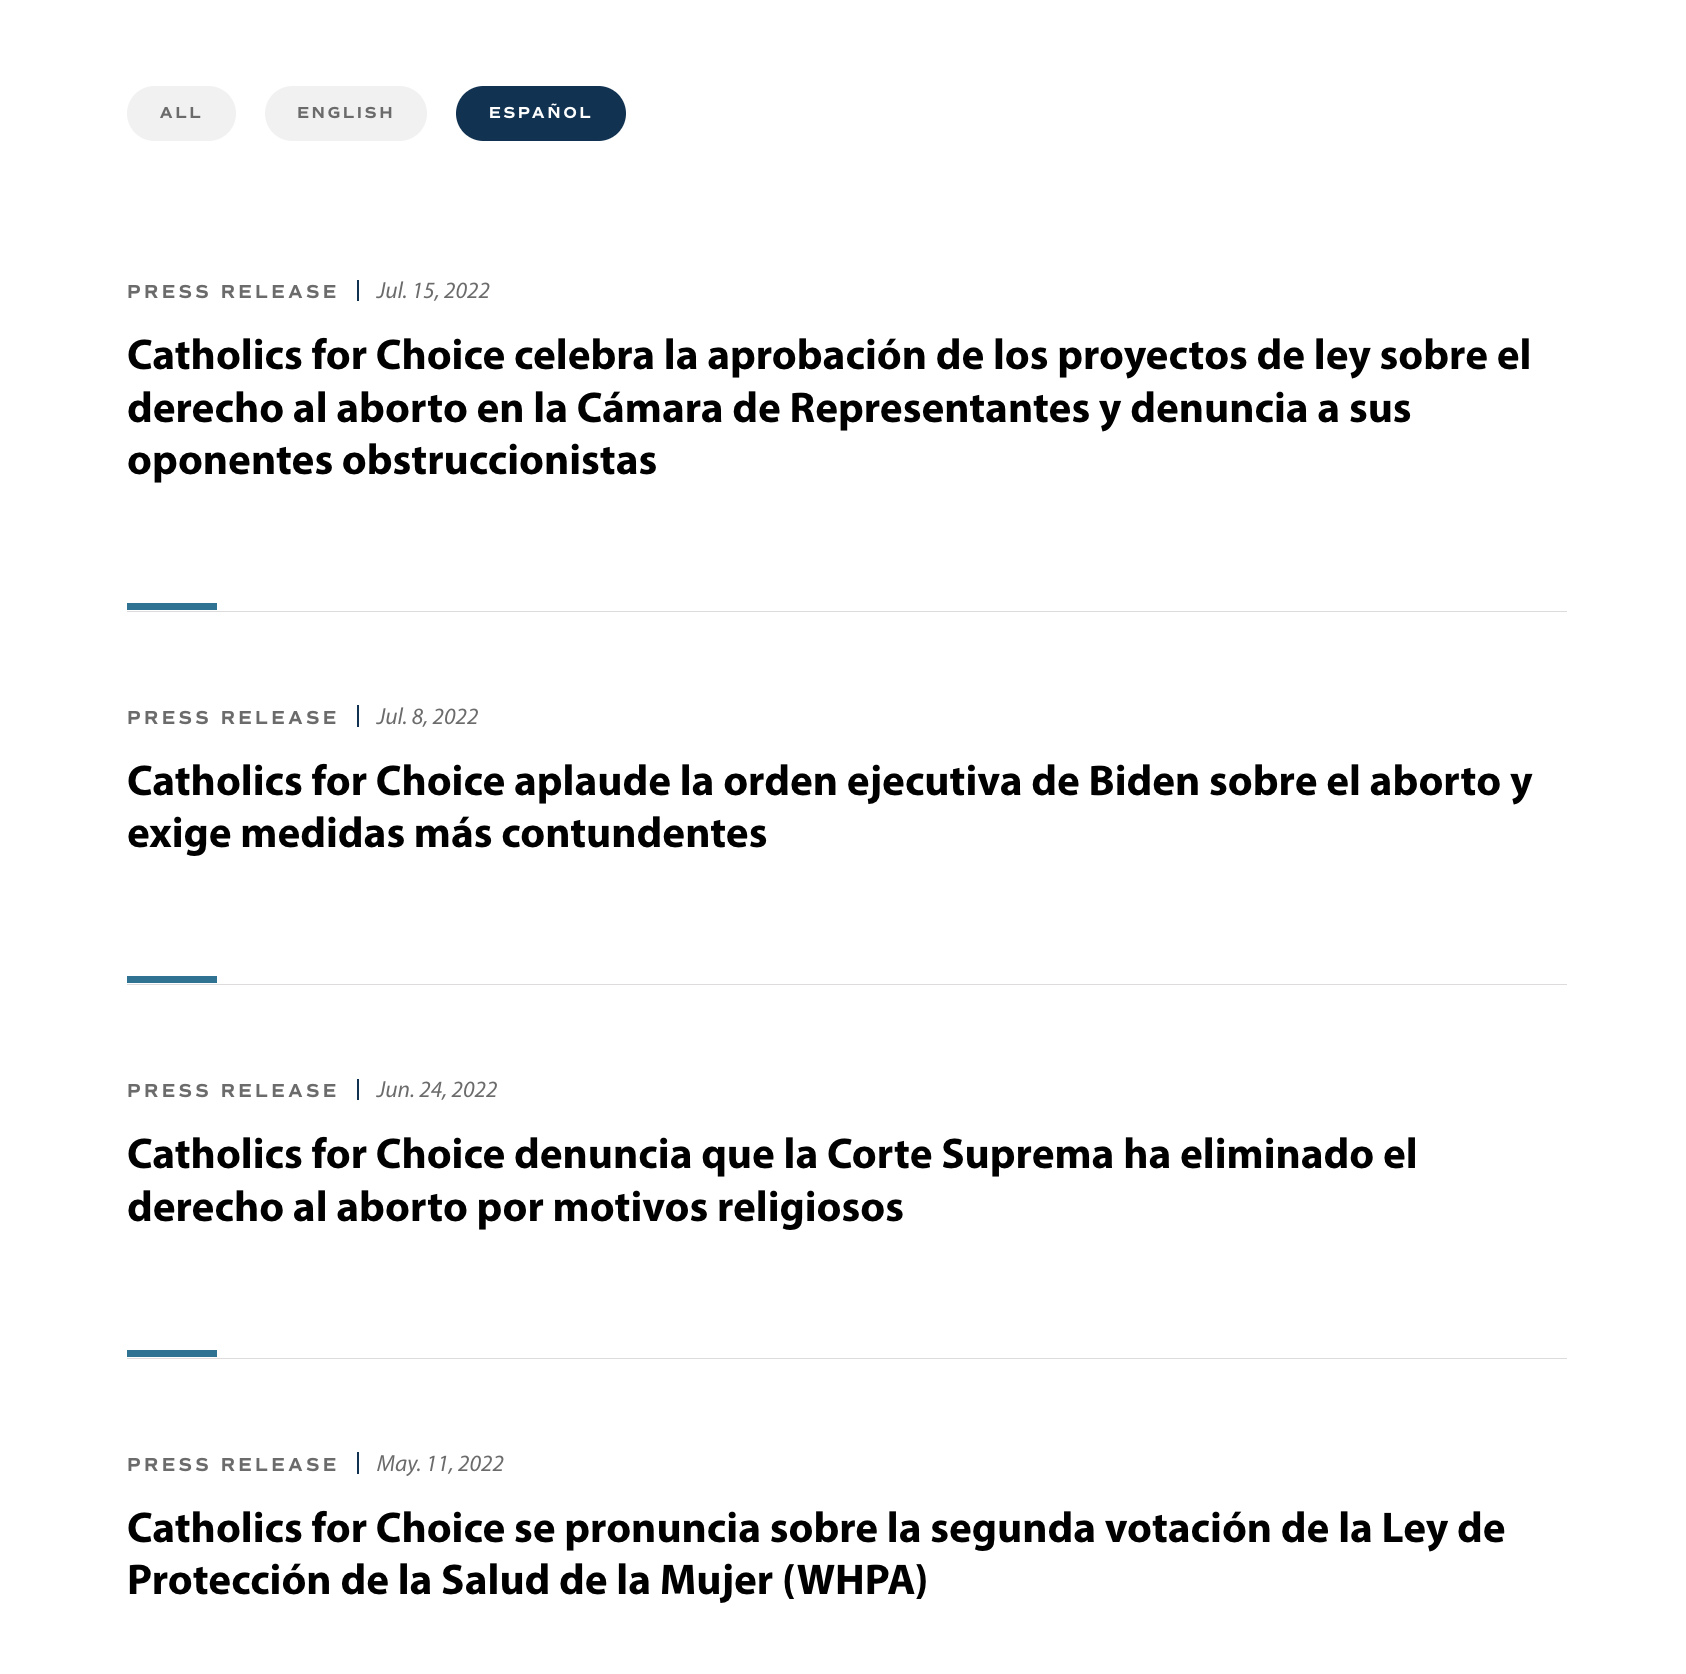 image showing Spanish translation of news